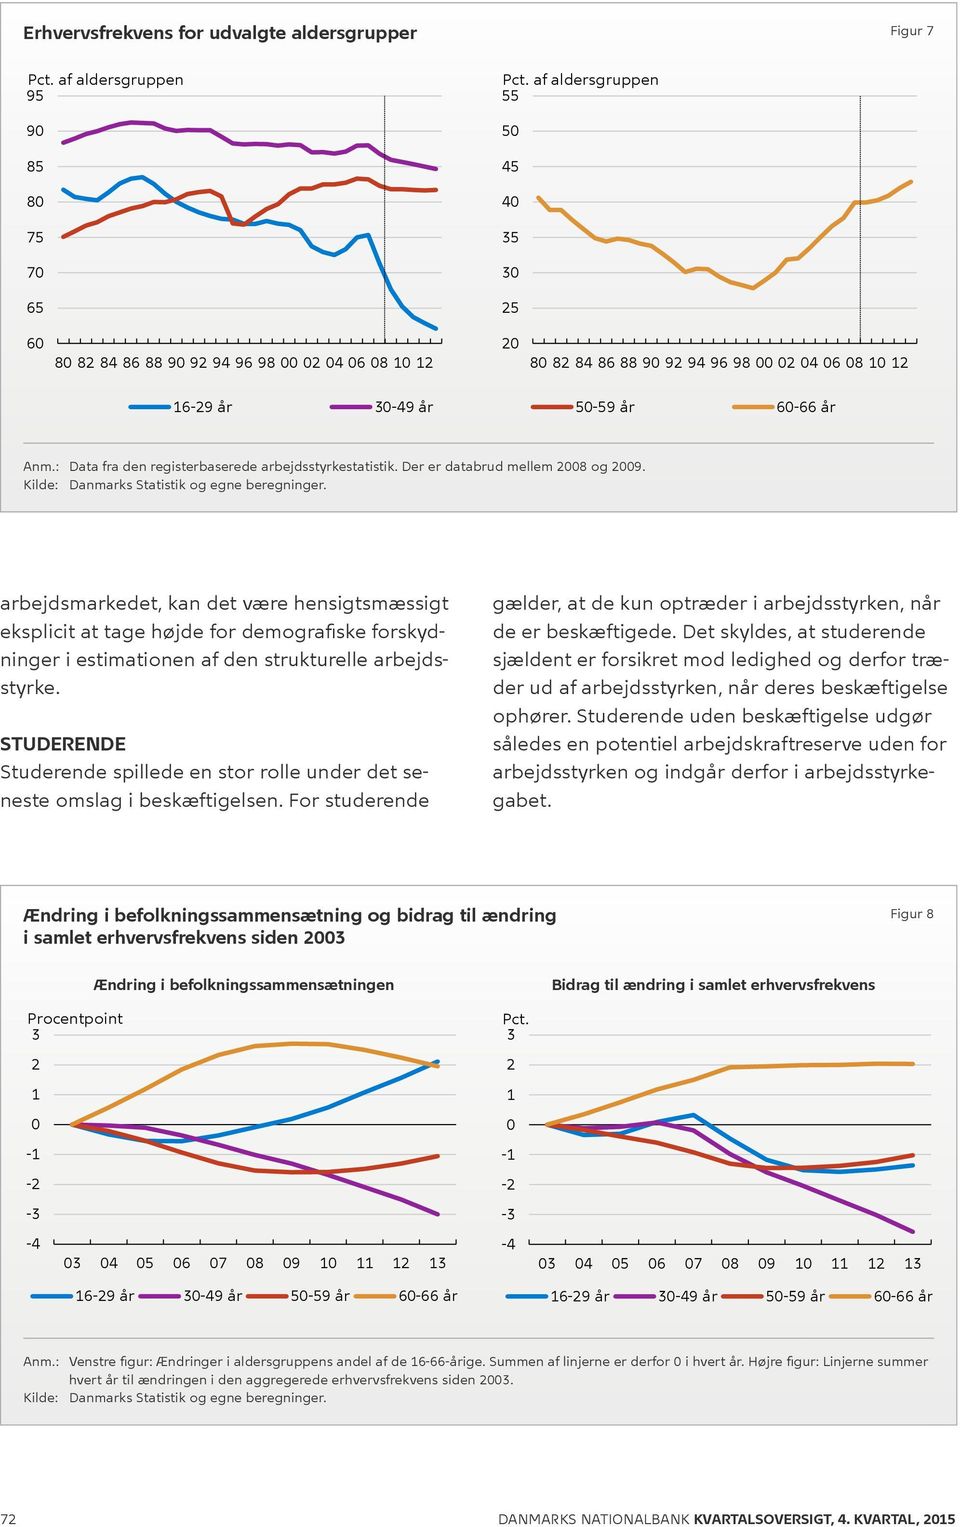 6-66 år Anm.: Data fra den registerbaserede arbejdsstyrkestatistik. Der er databrud mellem 28 og 29. Kilde: Danmarks Statistik og egne beregninger.